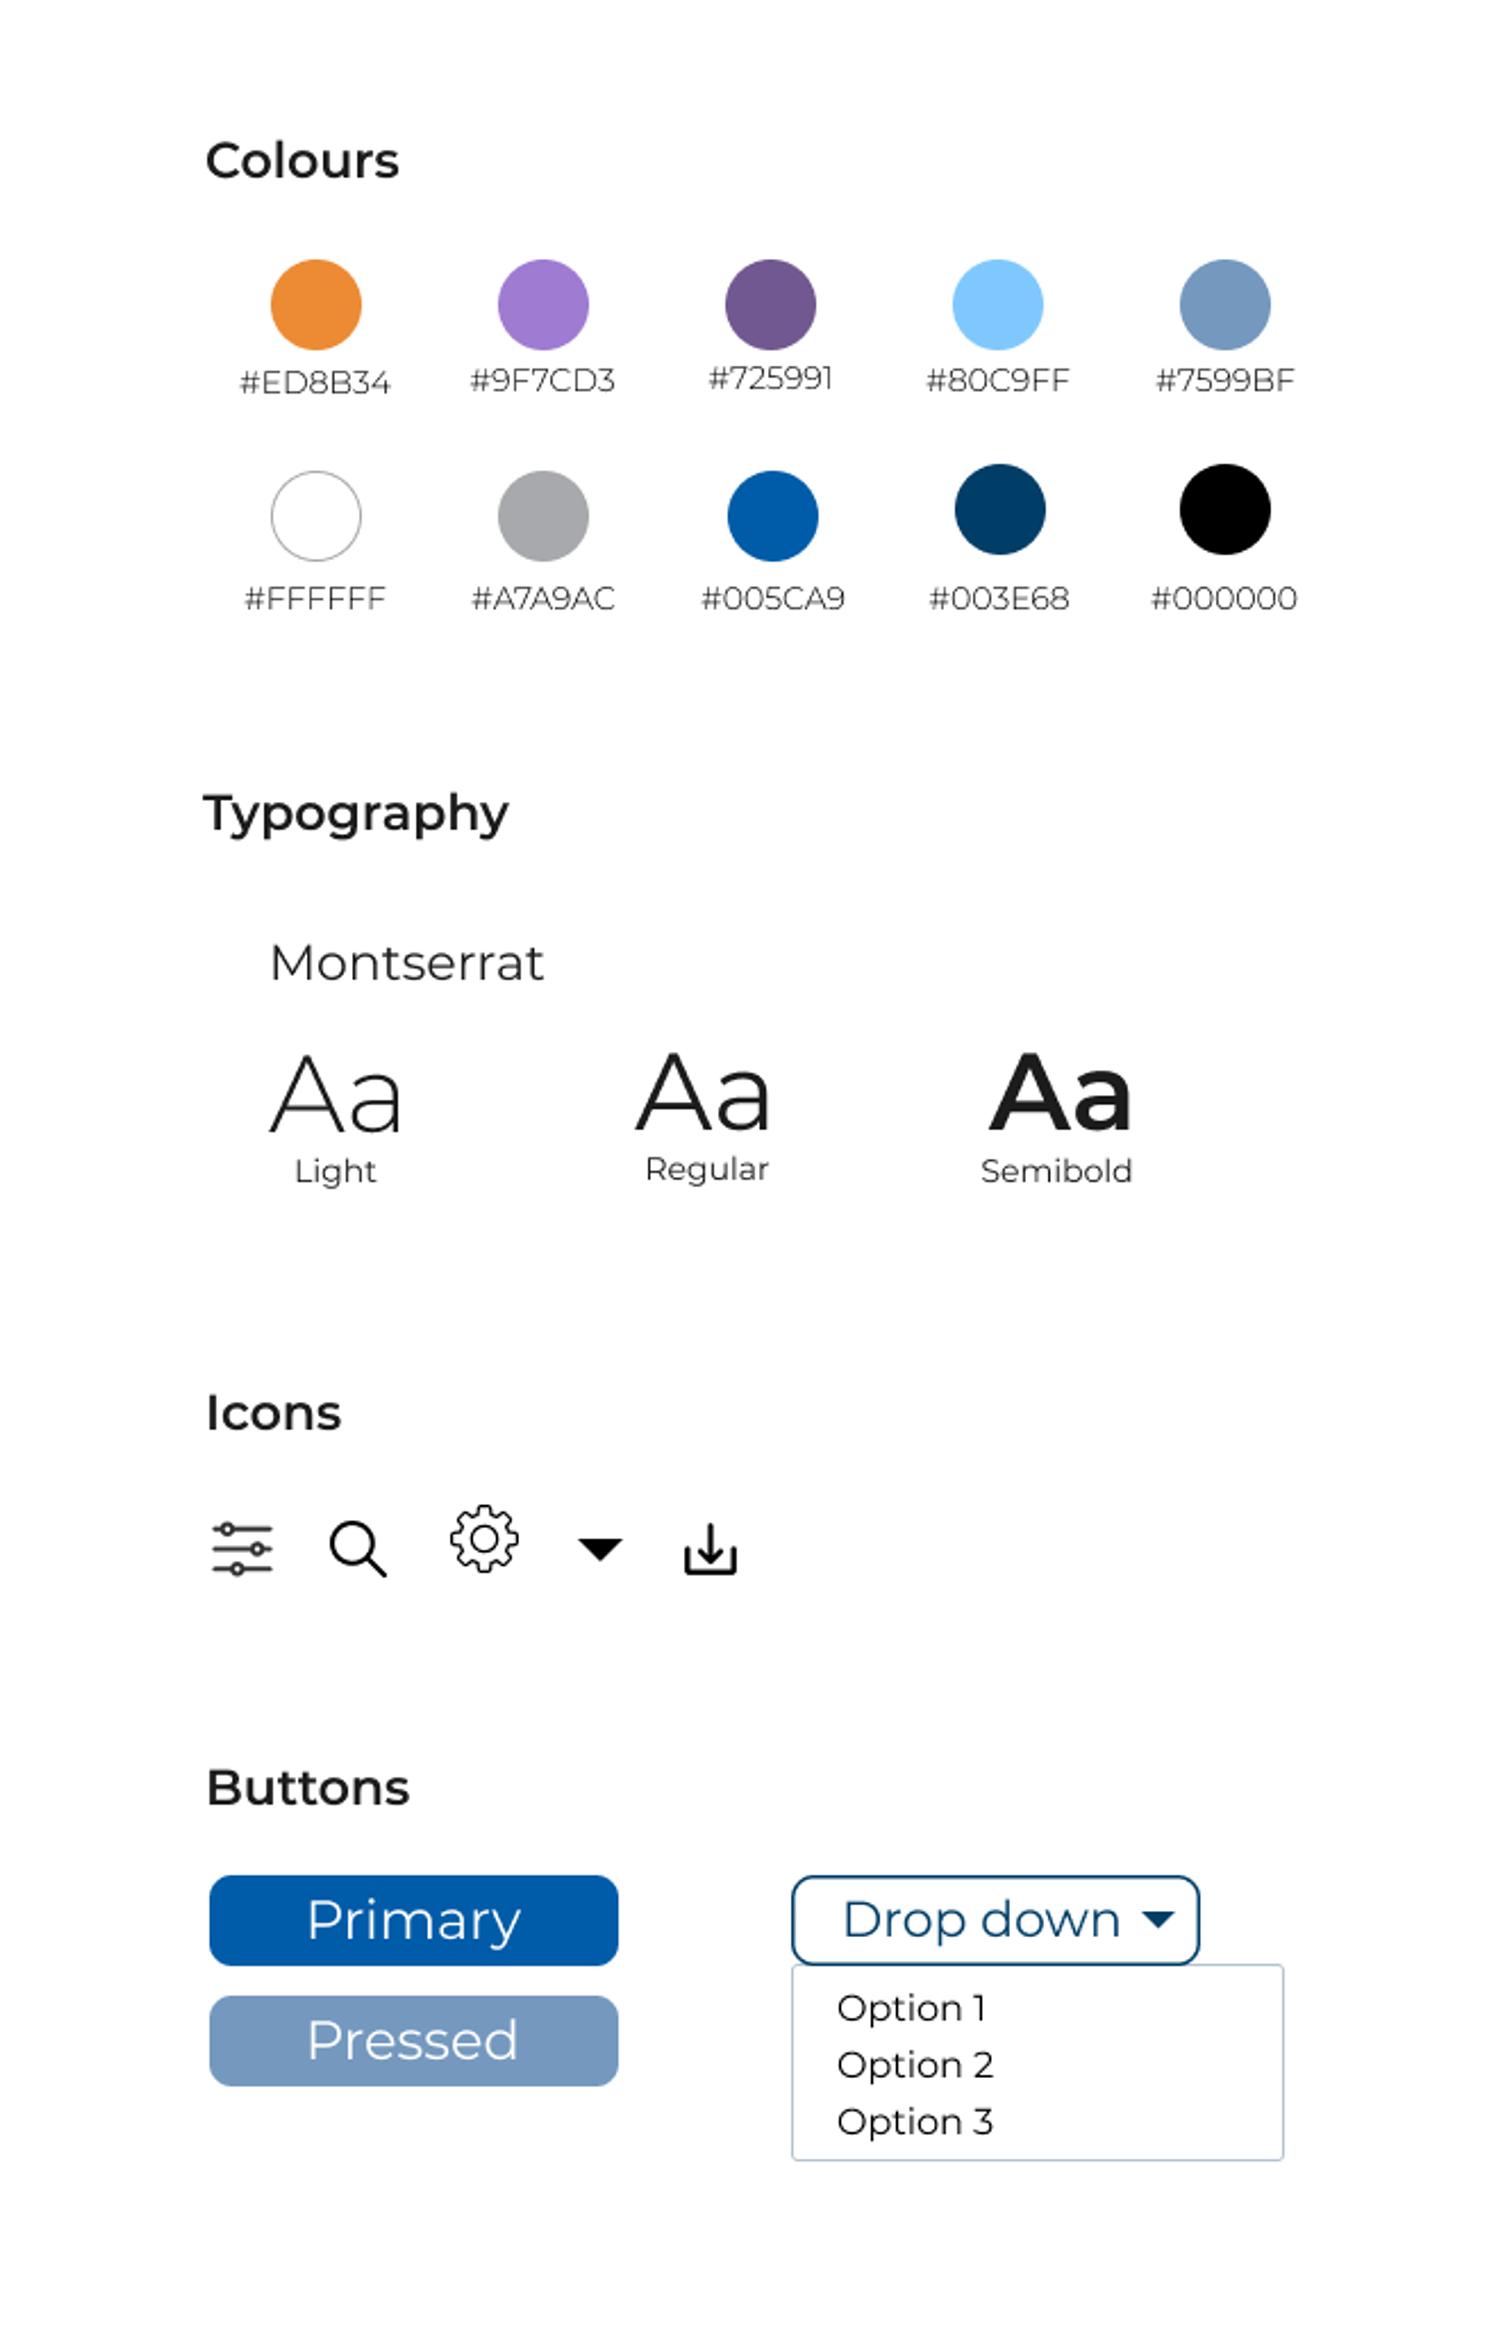 Guia de estilos incluindo esquema de cores, tipografia, iconografia e botões